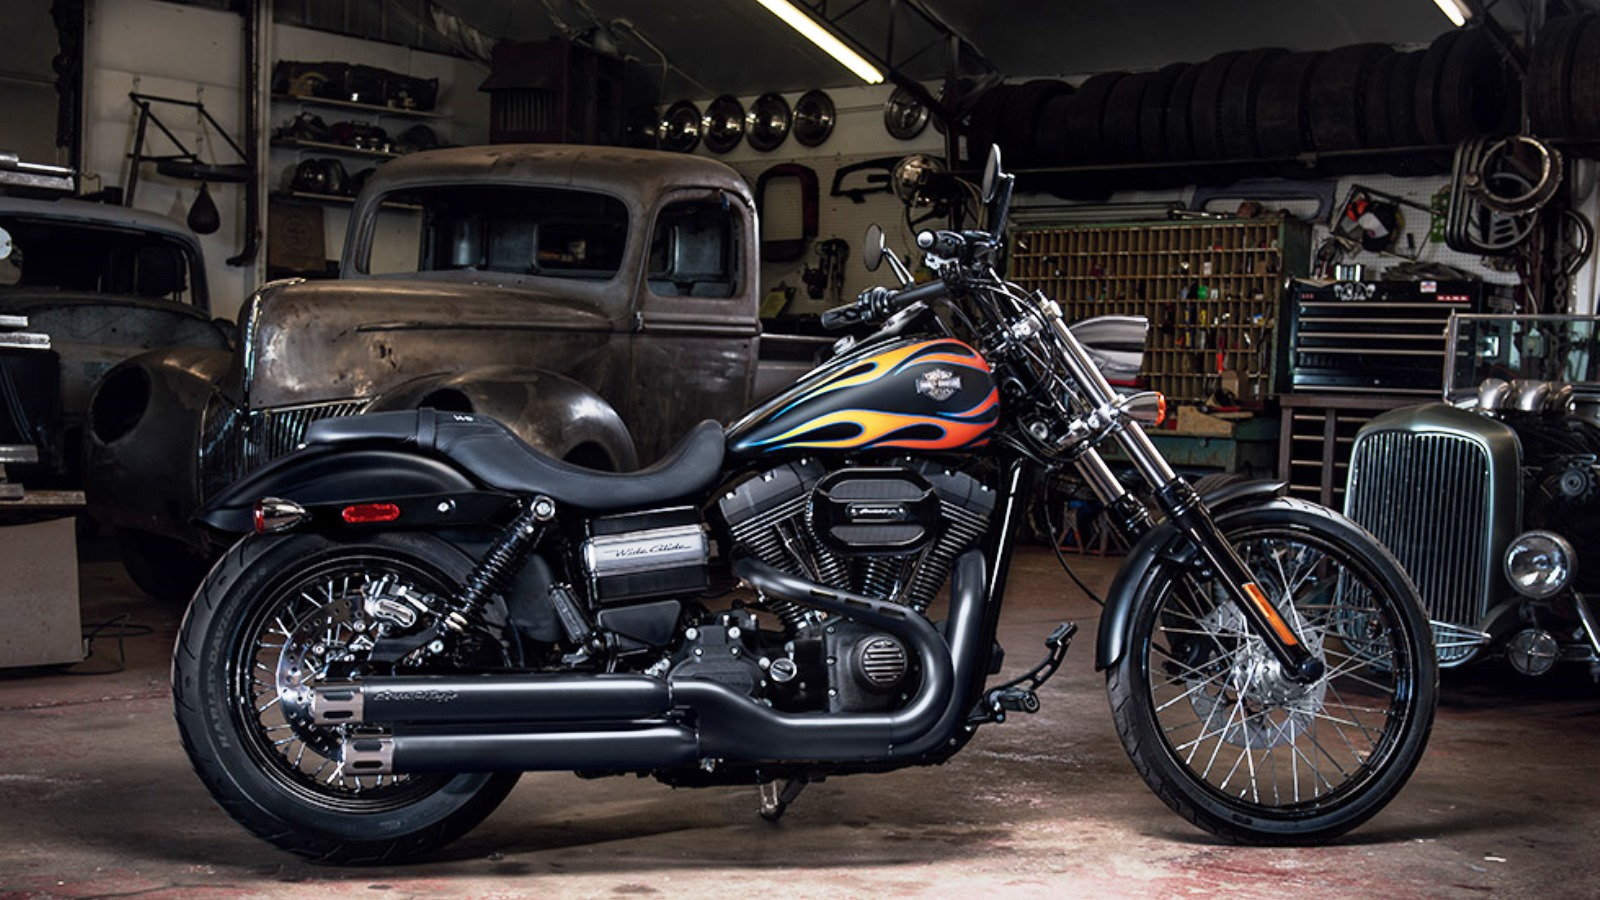 Harley Davidson Dyna Glide How To Change Engine Oil Hdforums